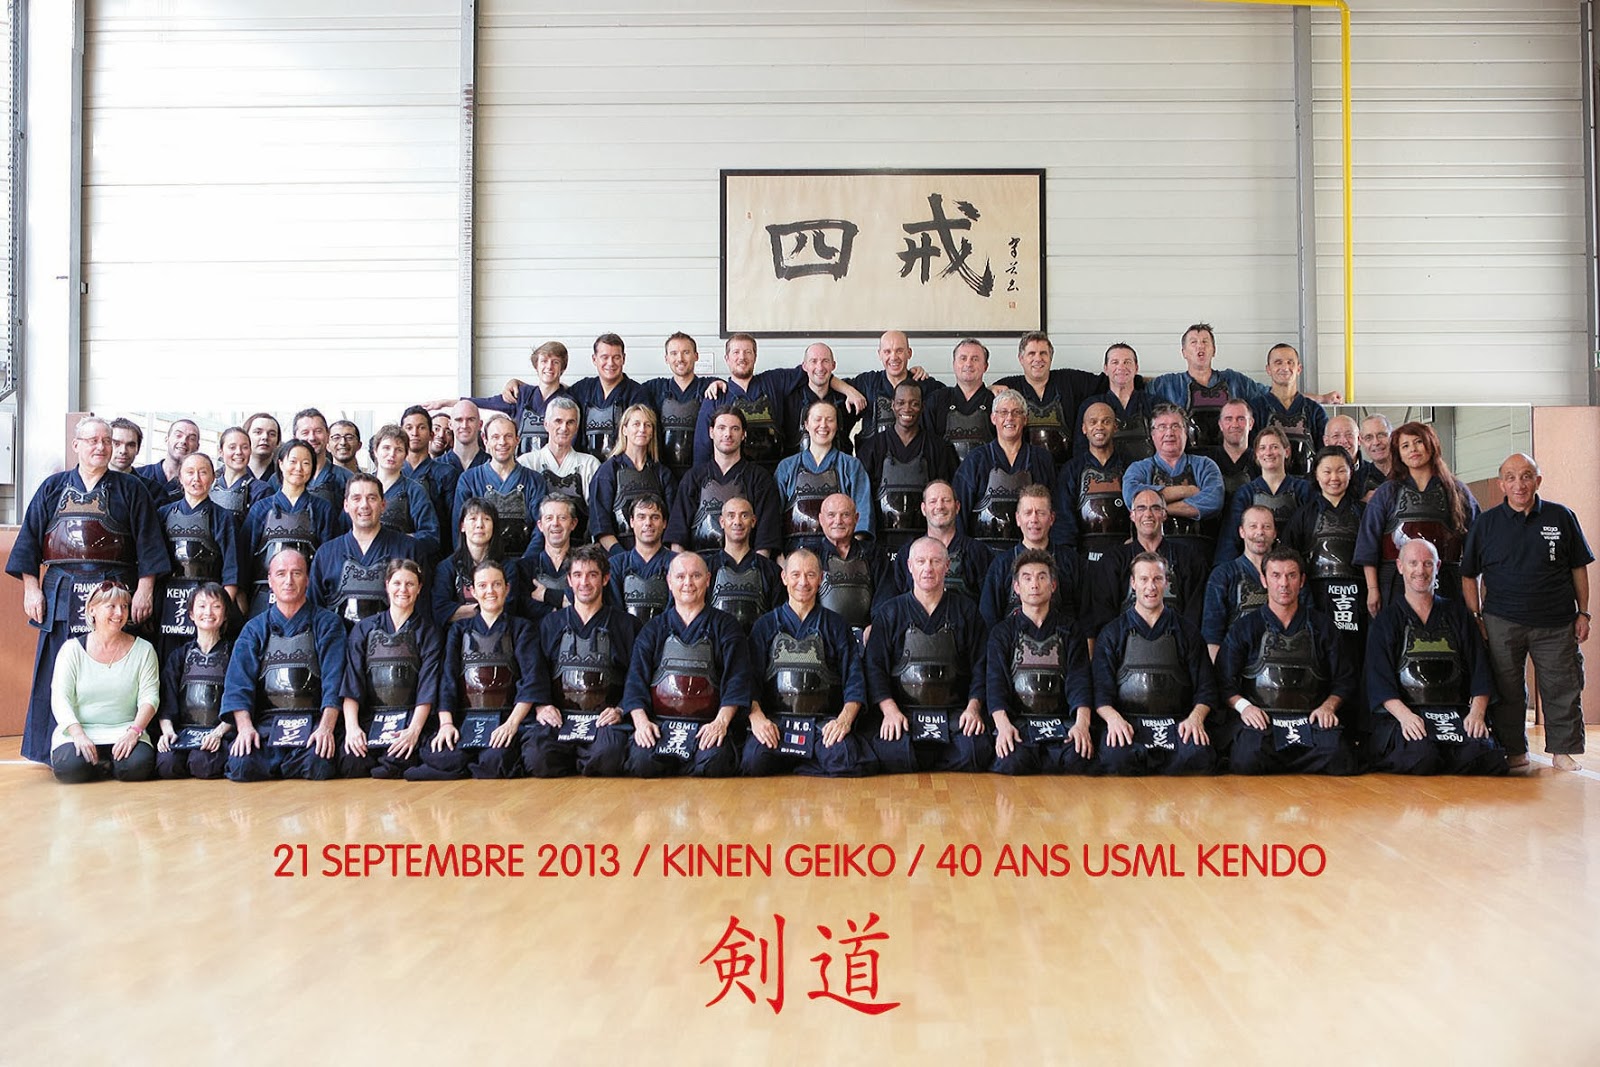 kendokas réunis pour les 40 ans du club de kendo usml